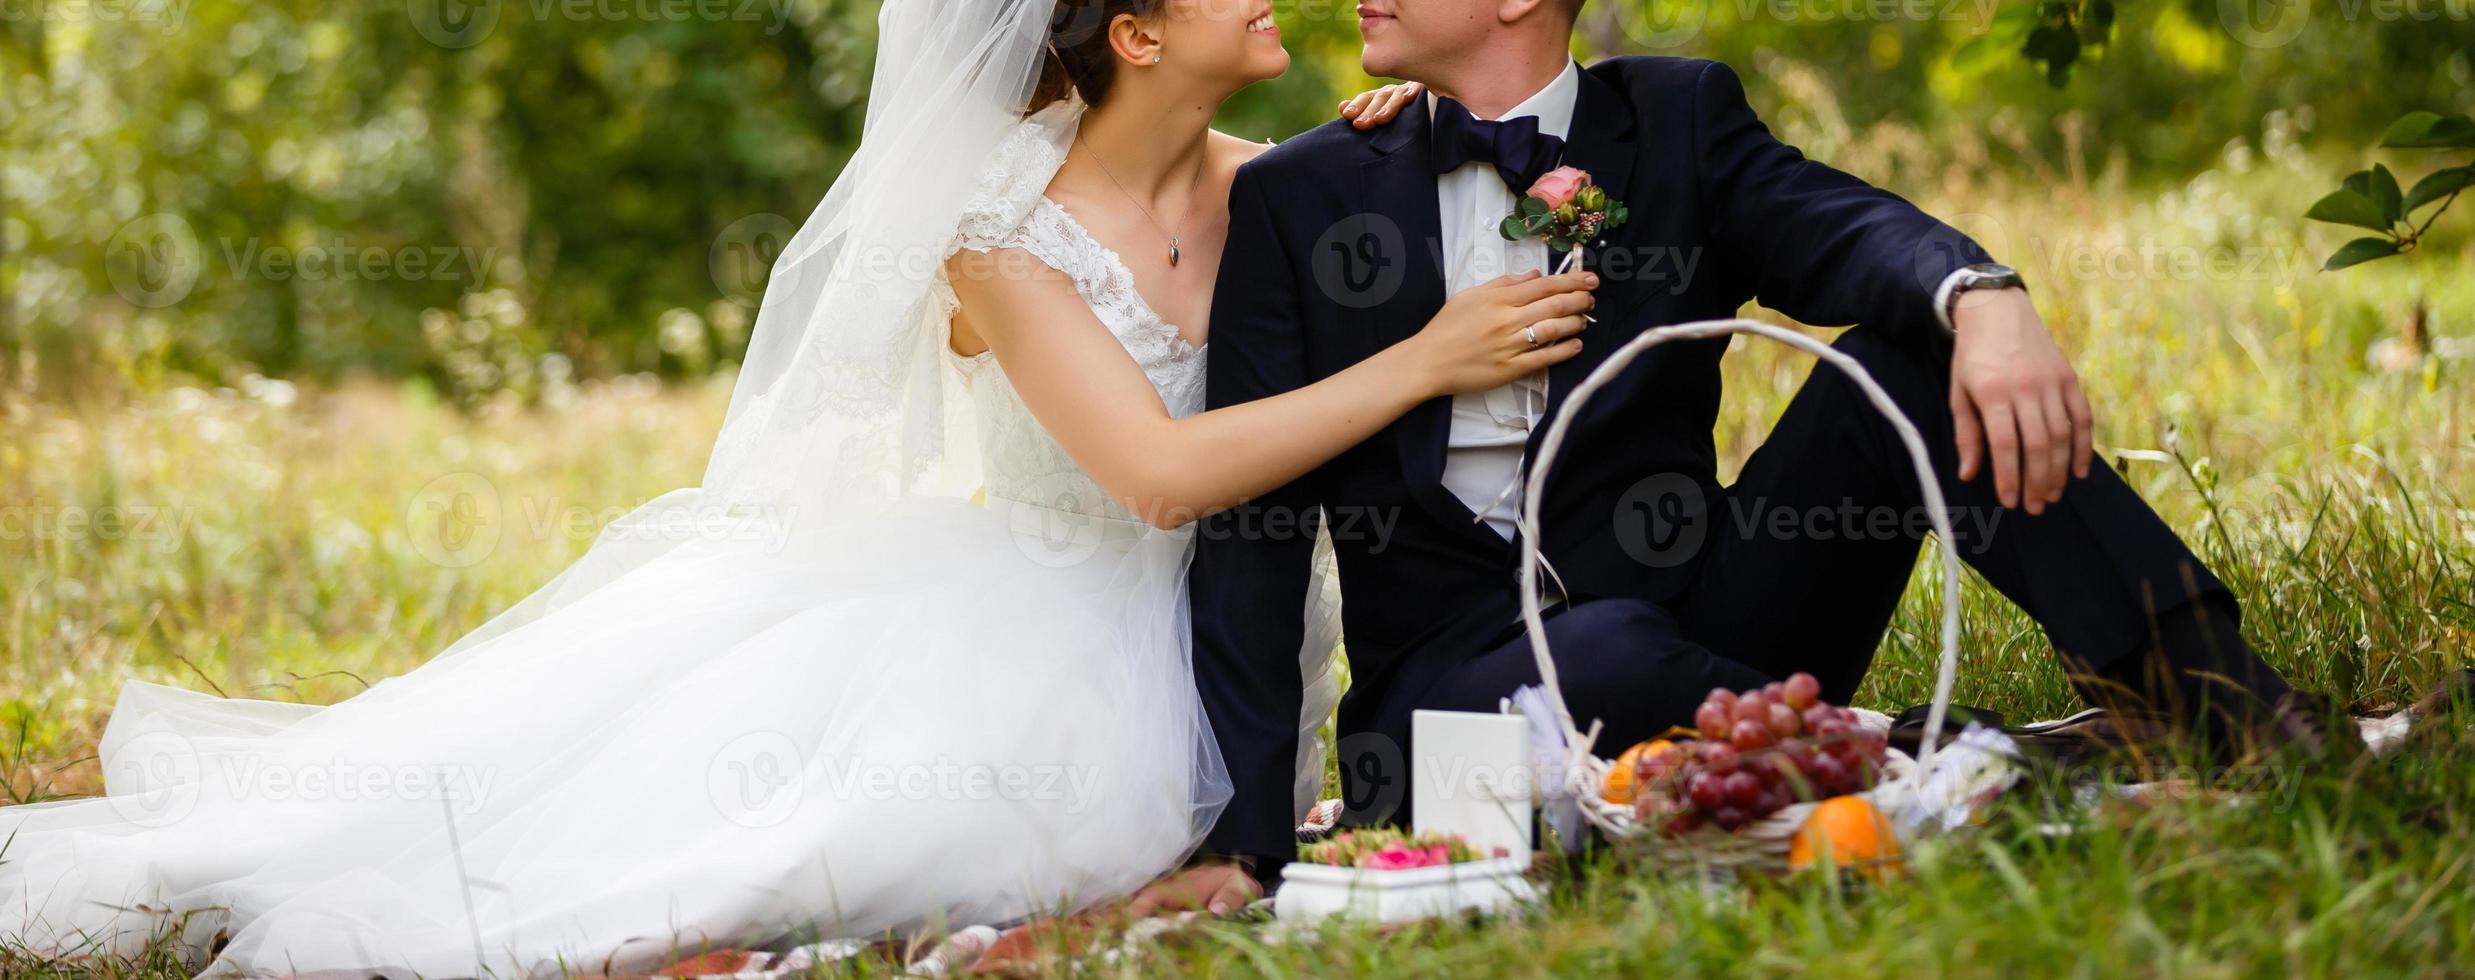 feliz novia y novio en un parque el día de su boda foto